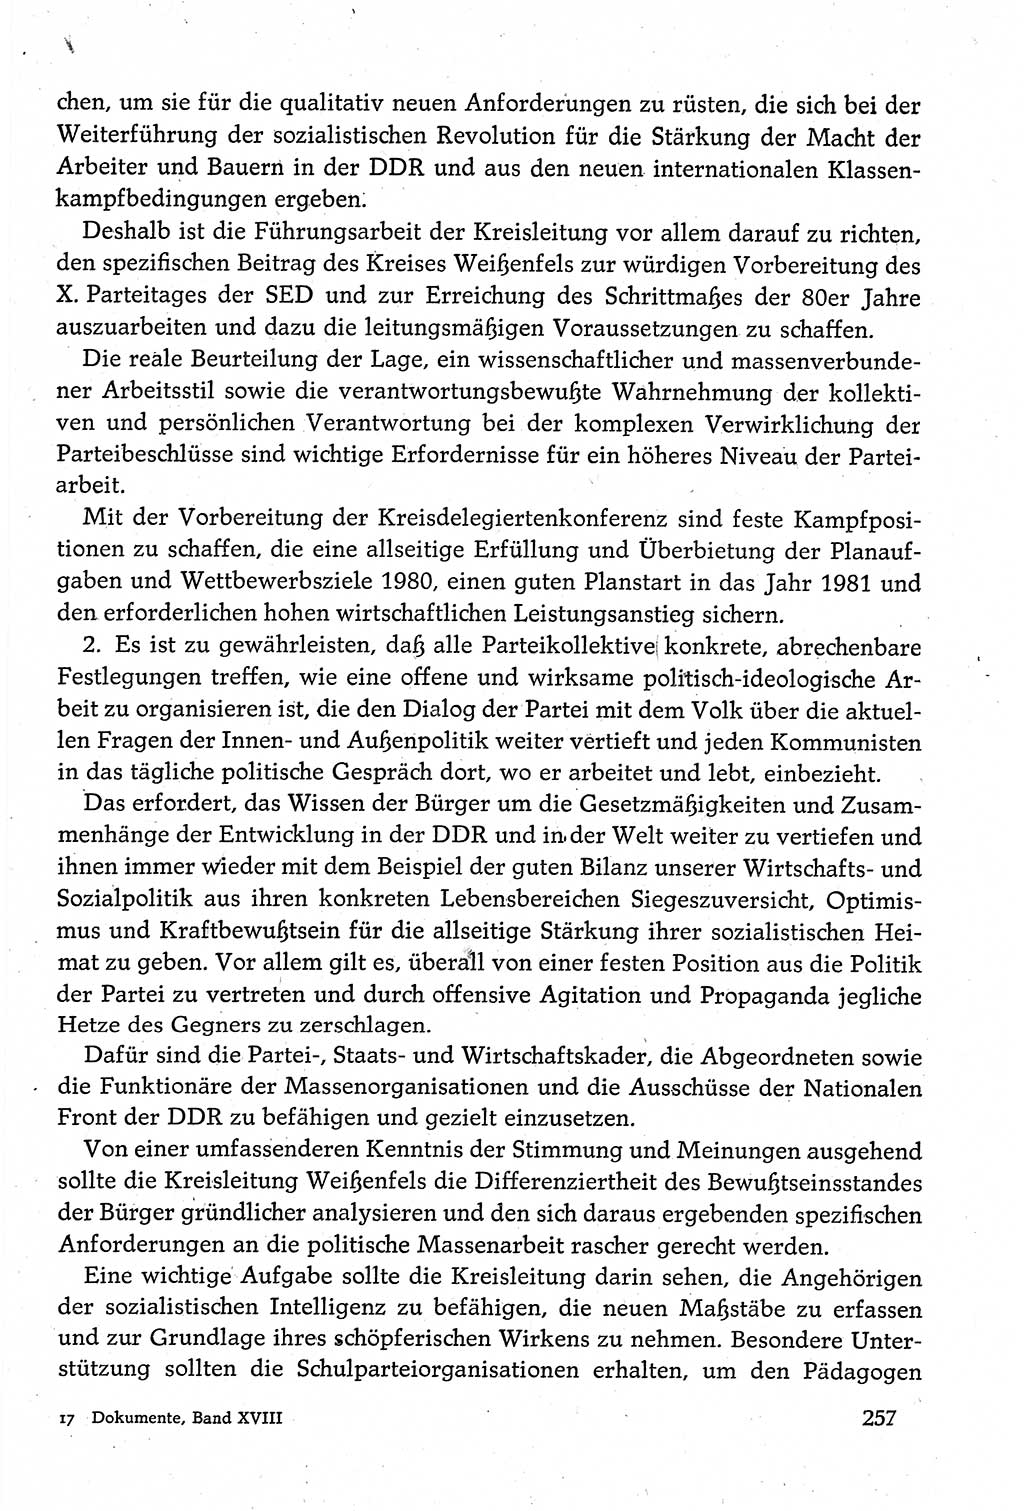 Dokumente der Sozialistischen Einheitspartei Deutschlands (SED) [Deutsche Demokratische Republik (DDR)] 1980-1981, Seite 257 (Dok. SED DDR 1980-1981, S. 257)